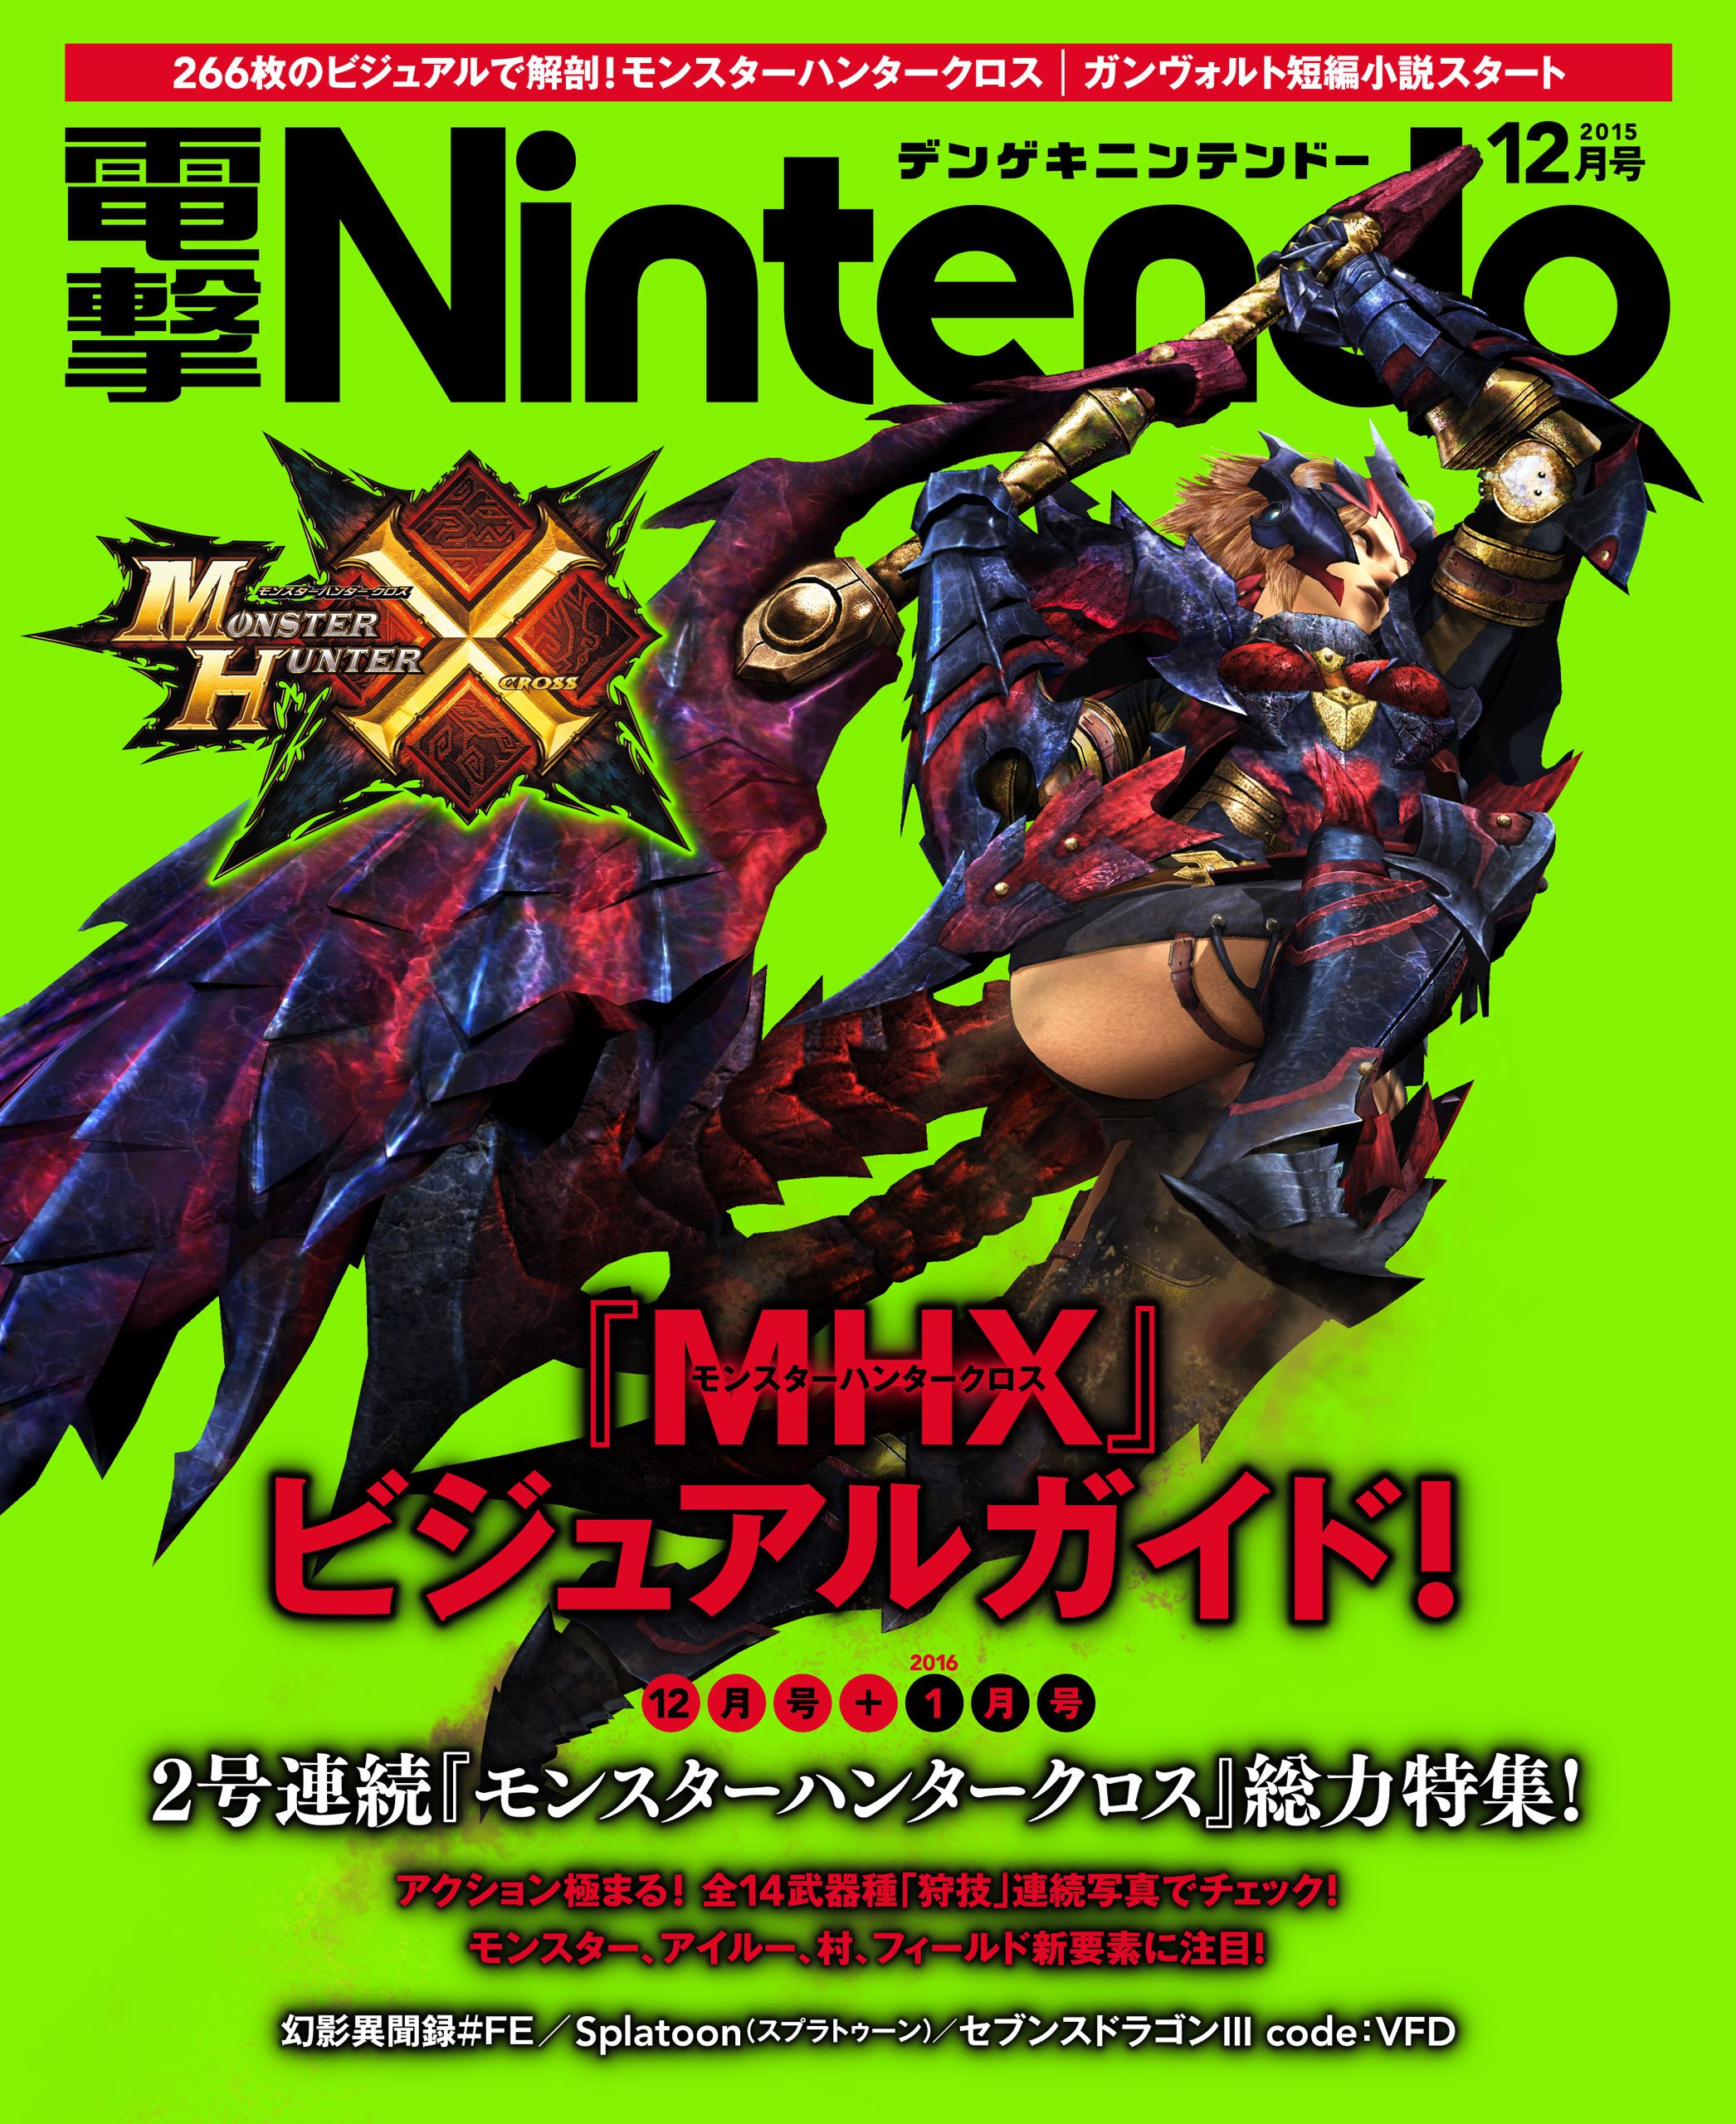 Dengeki Nintendo Issue 031 (December 2015)